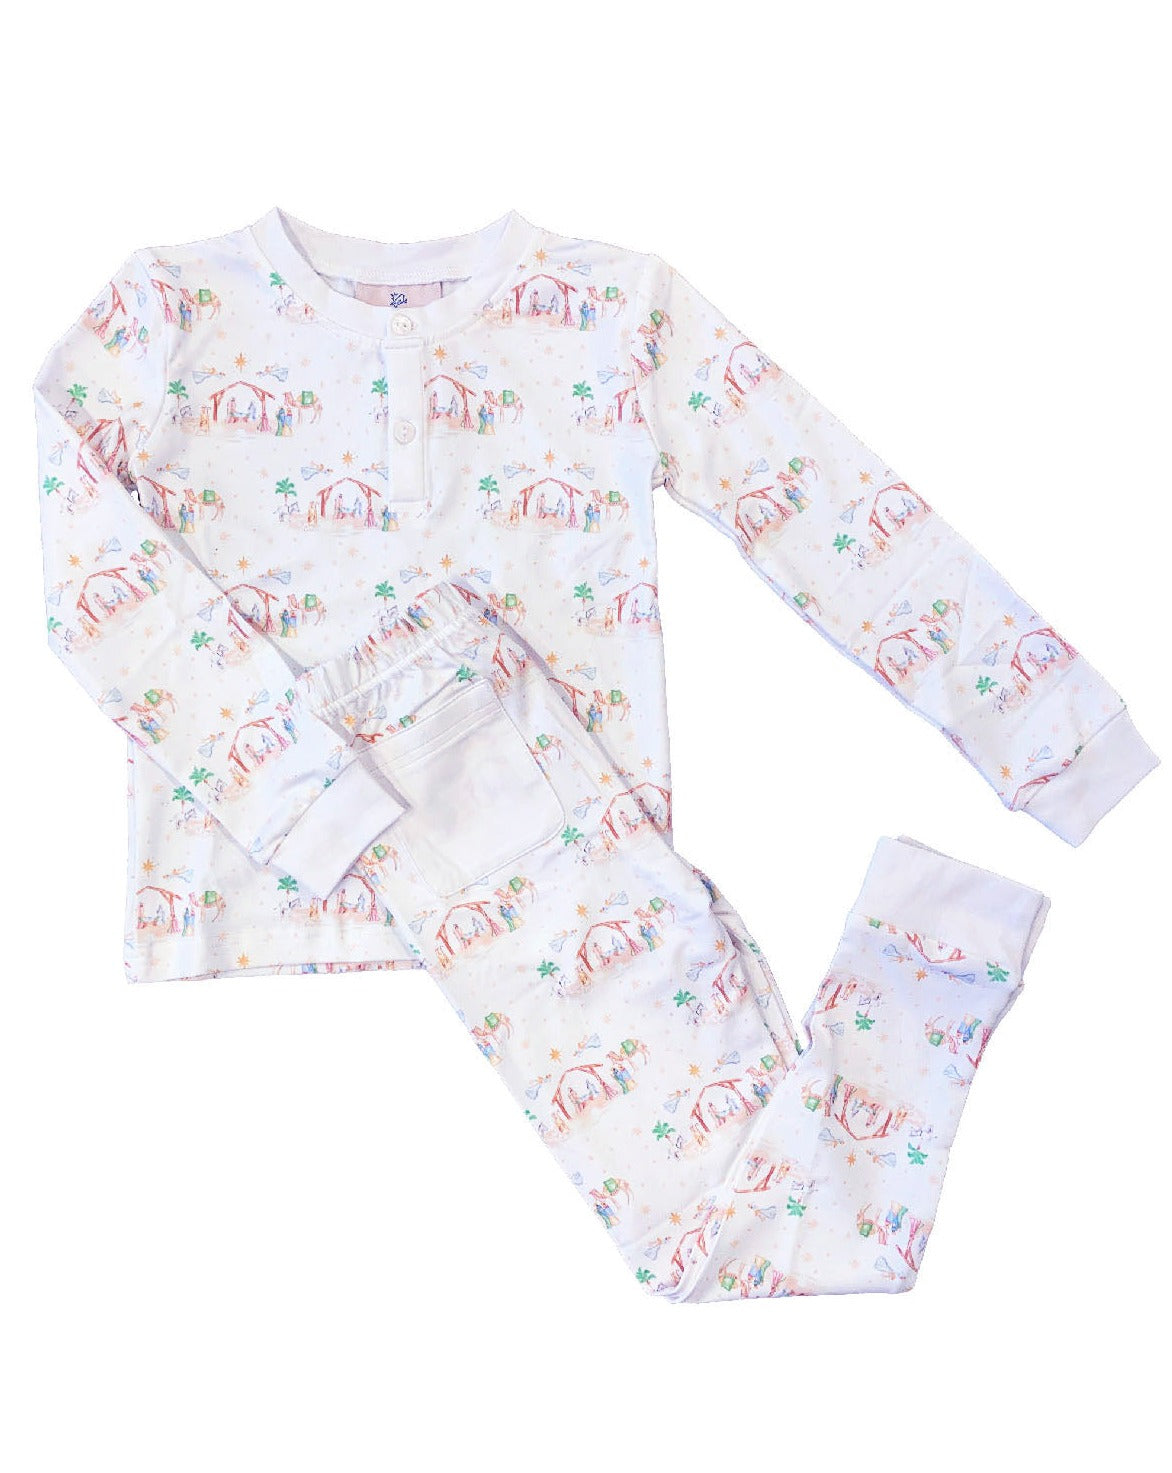 Nativity Print Pajama Set